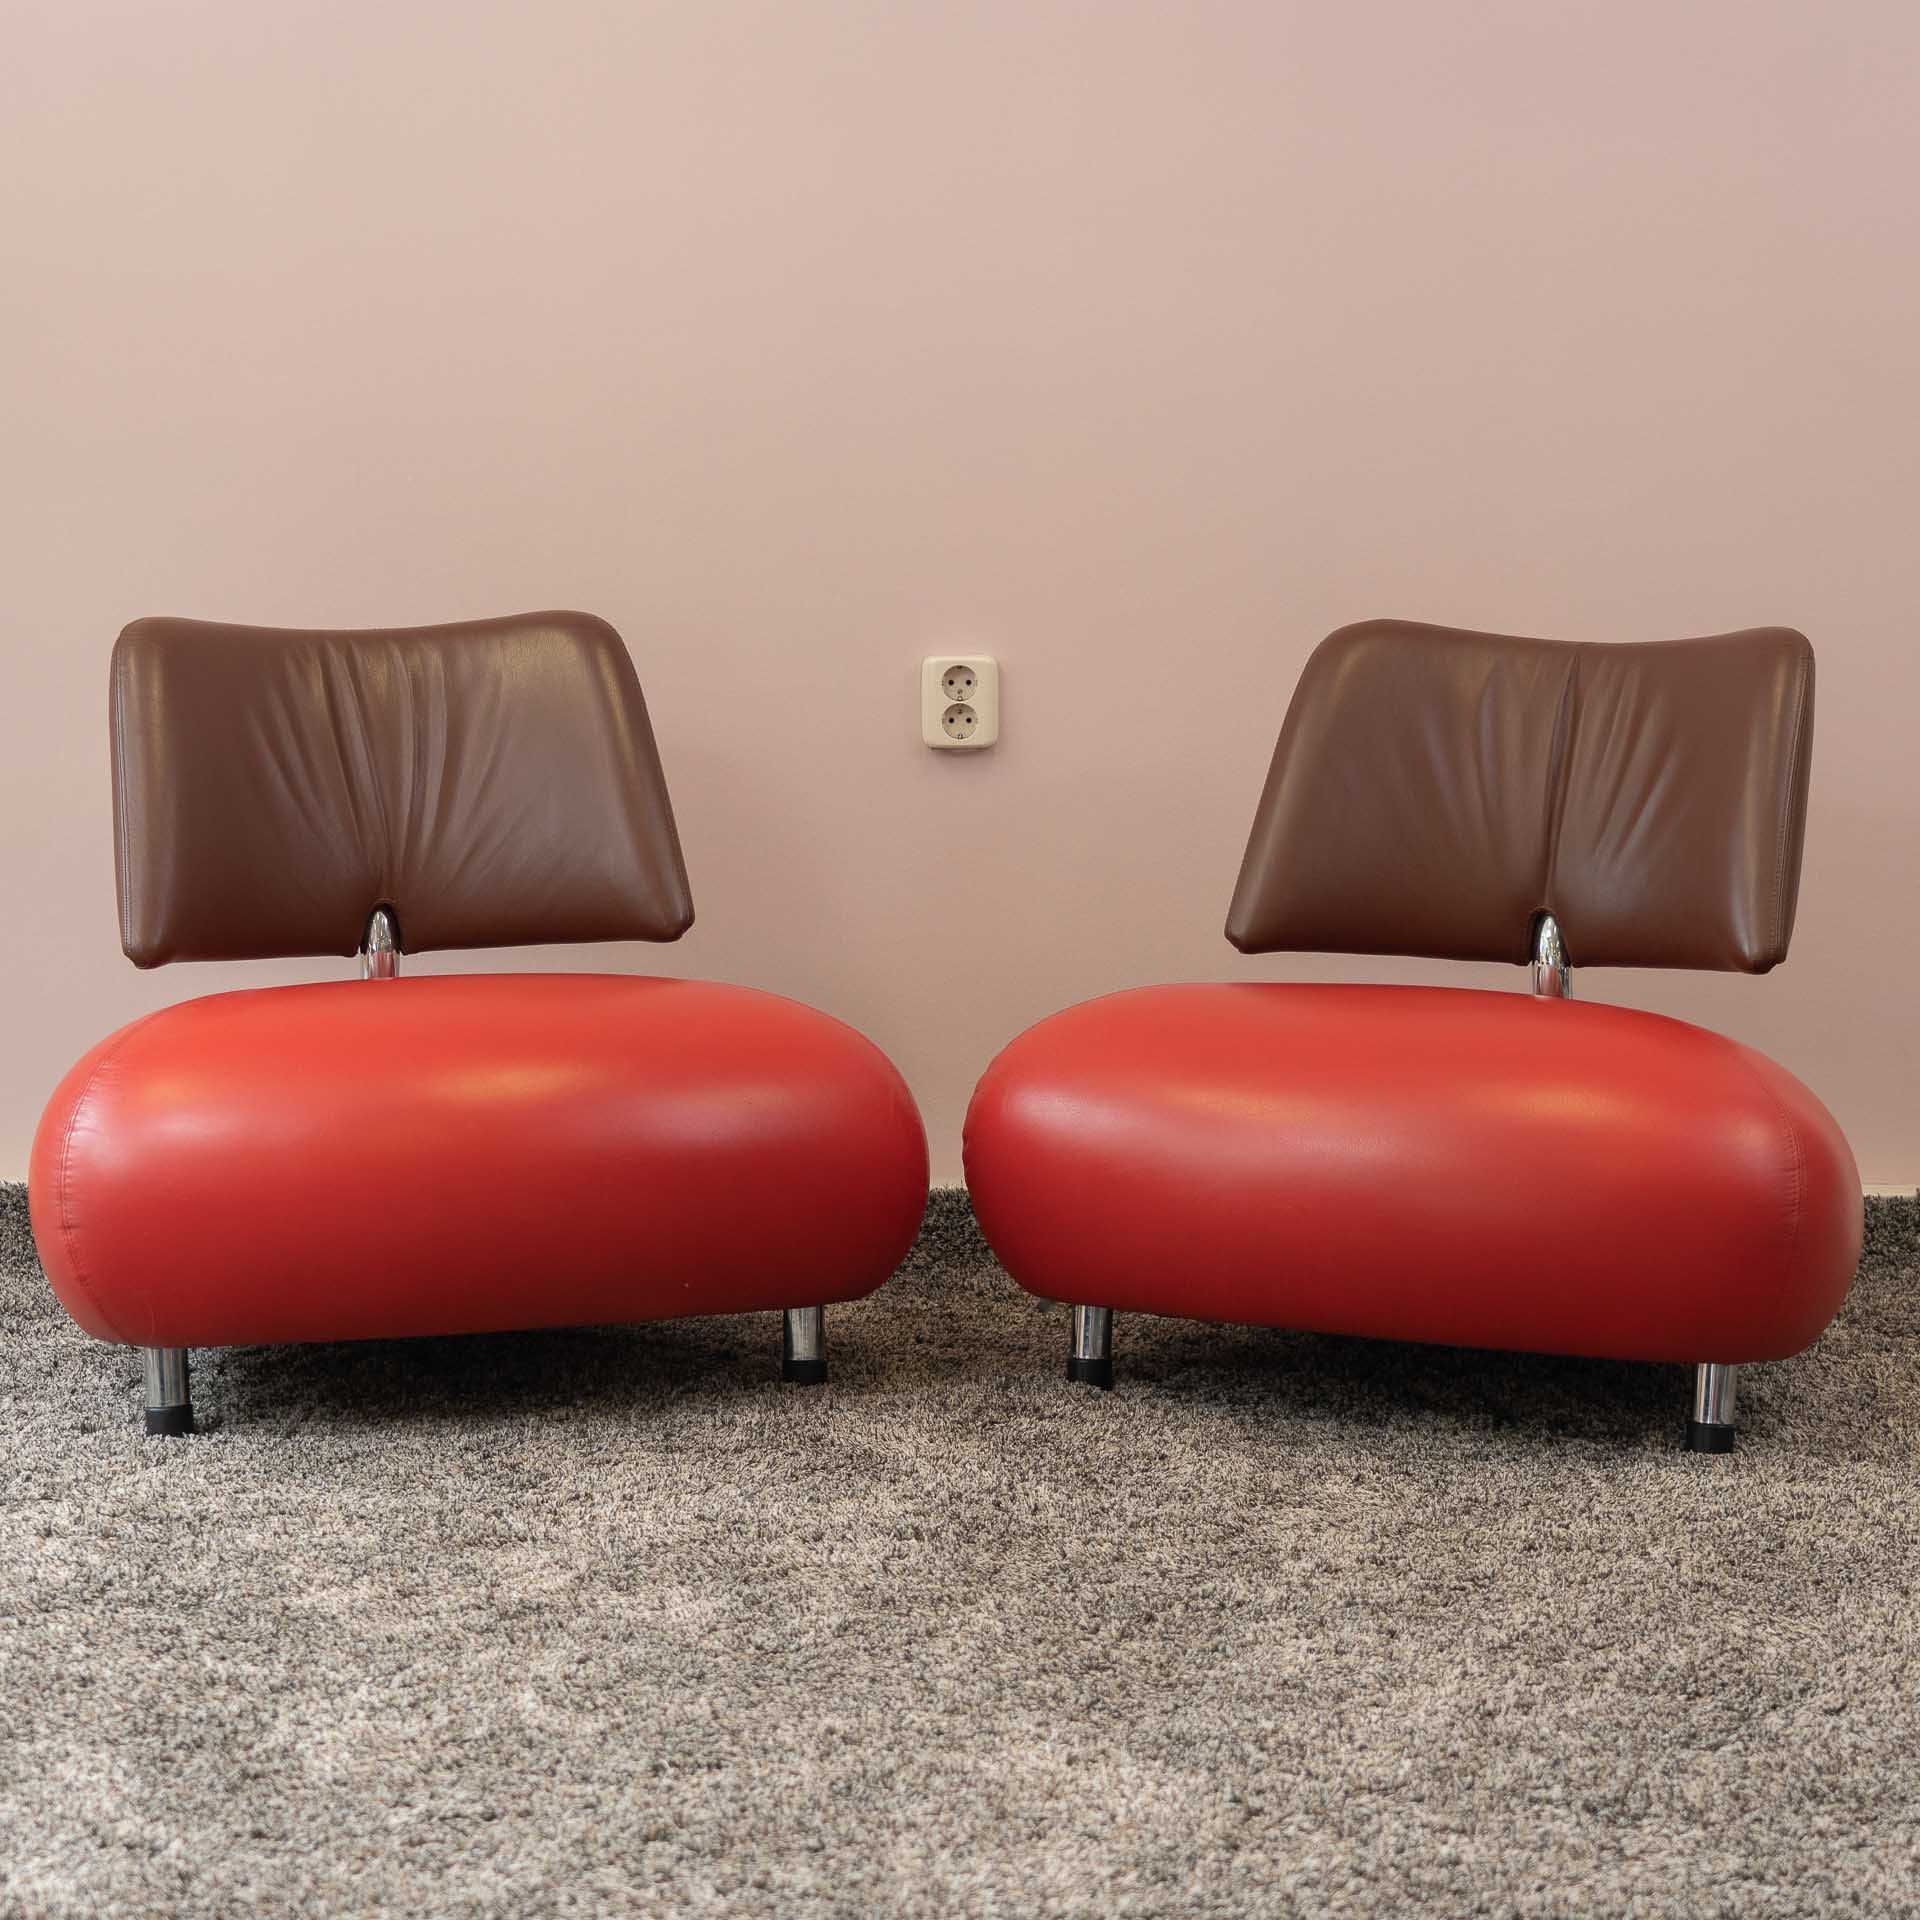 2x Leolux Pallone fauteuils in de kleurstelling rood/bruin